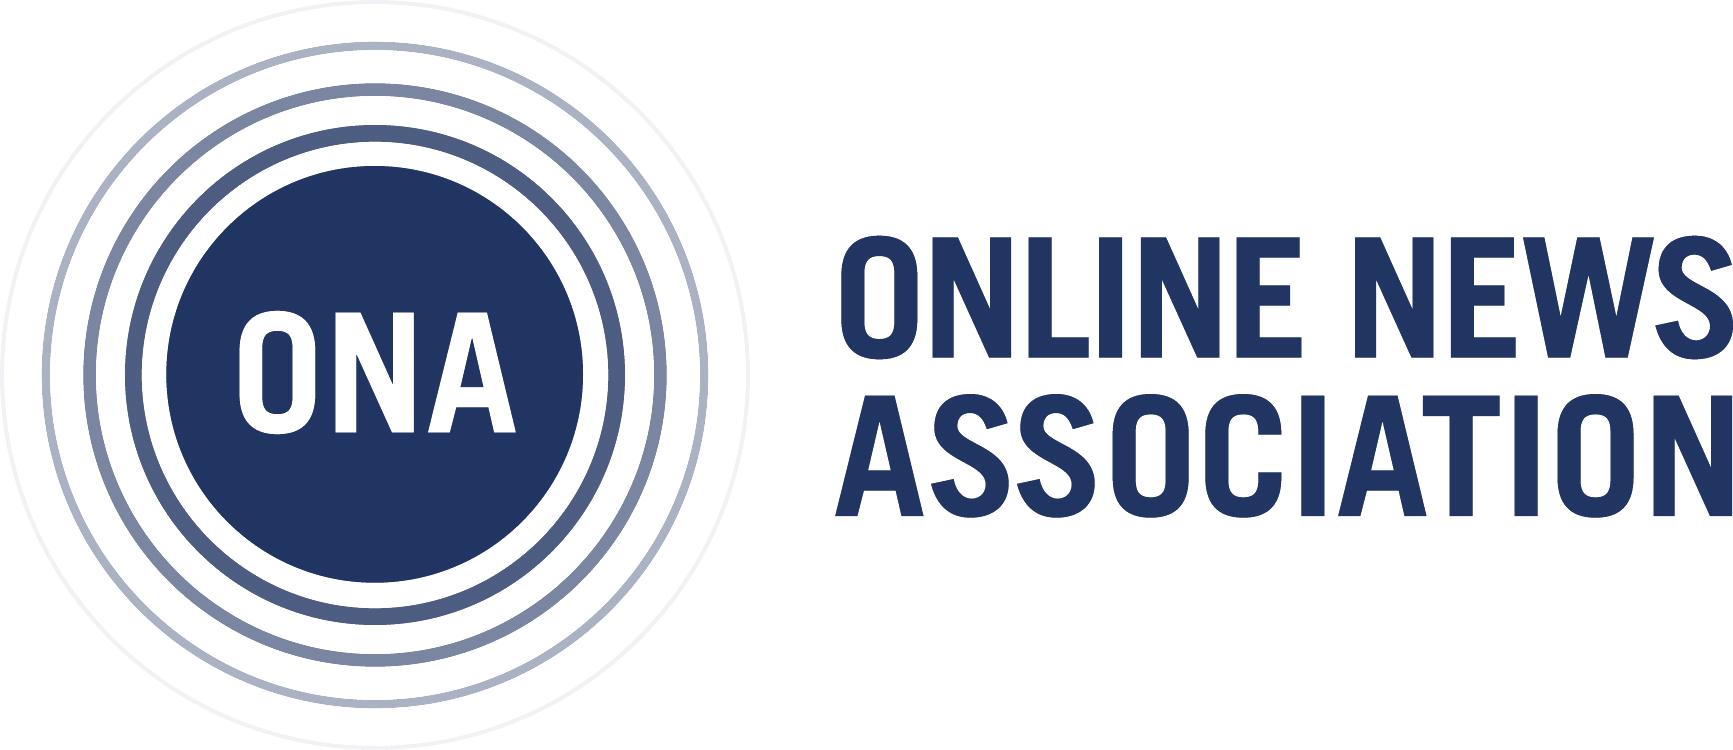 Online News Association logo